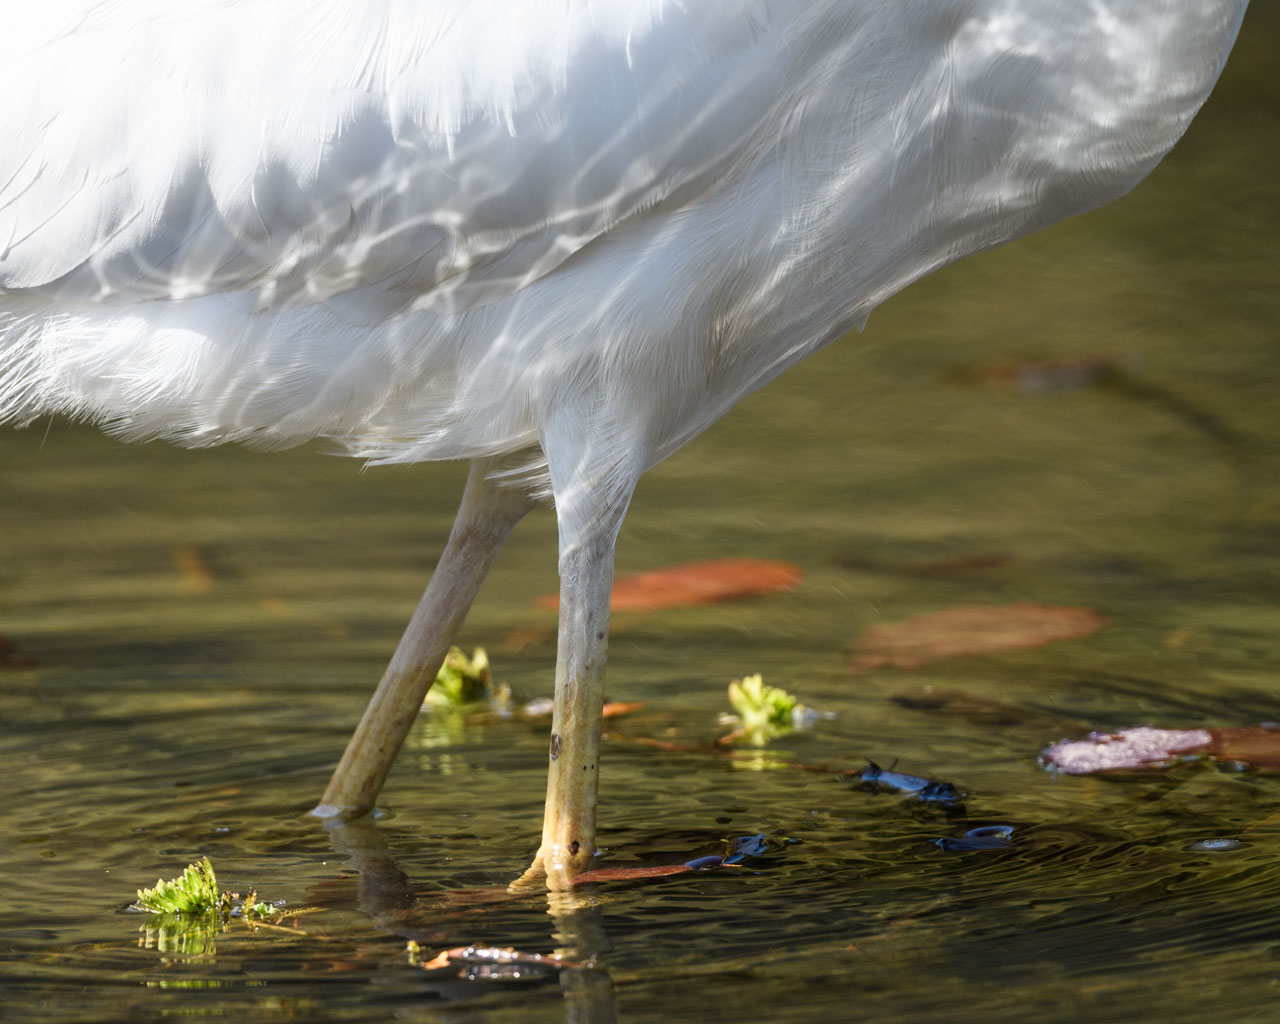 池を歩くダイサギの足元。ゆらめく水が光を反射する。 The feet of a great egret walking in a pond. The shimmering water reflects the light.